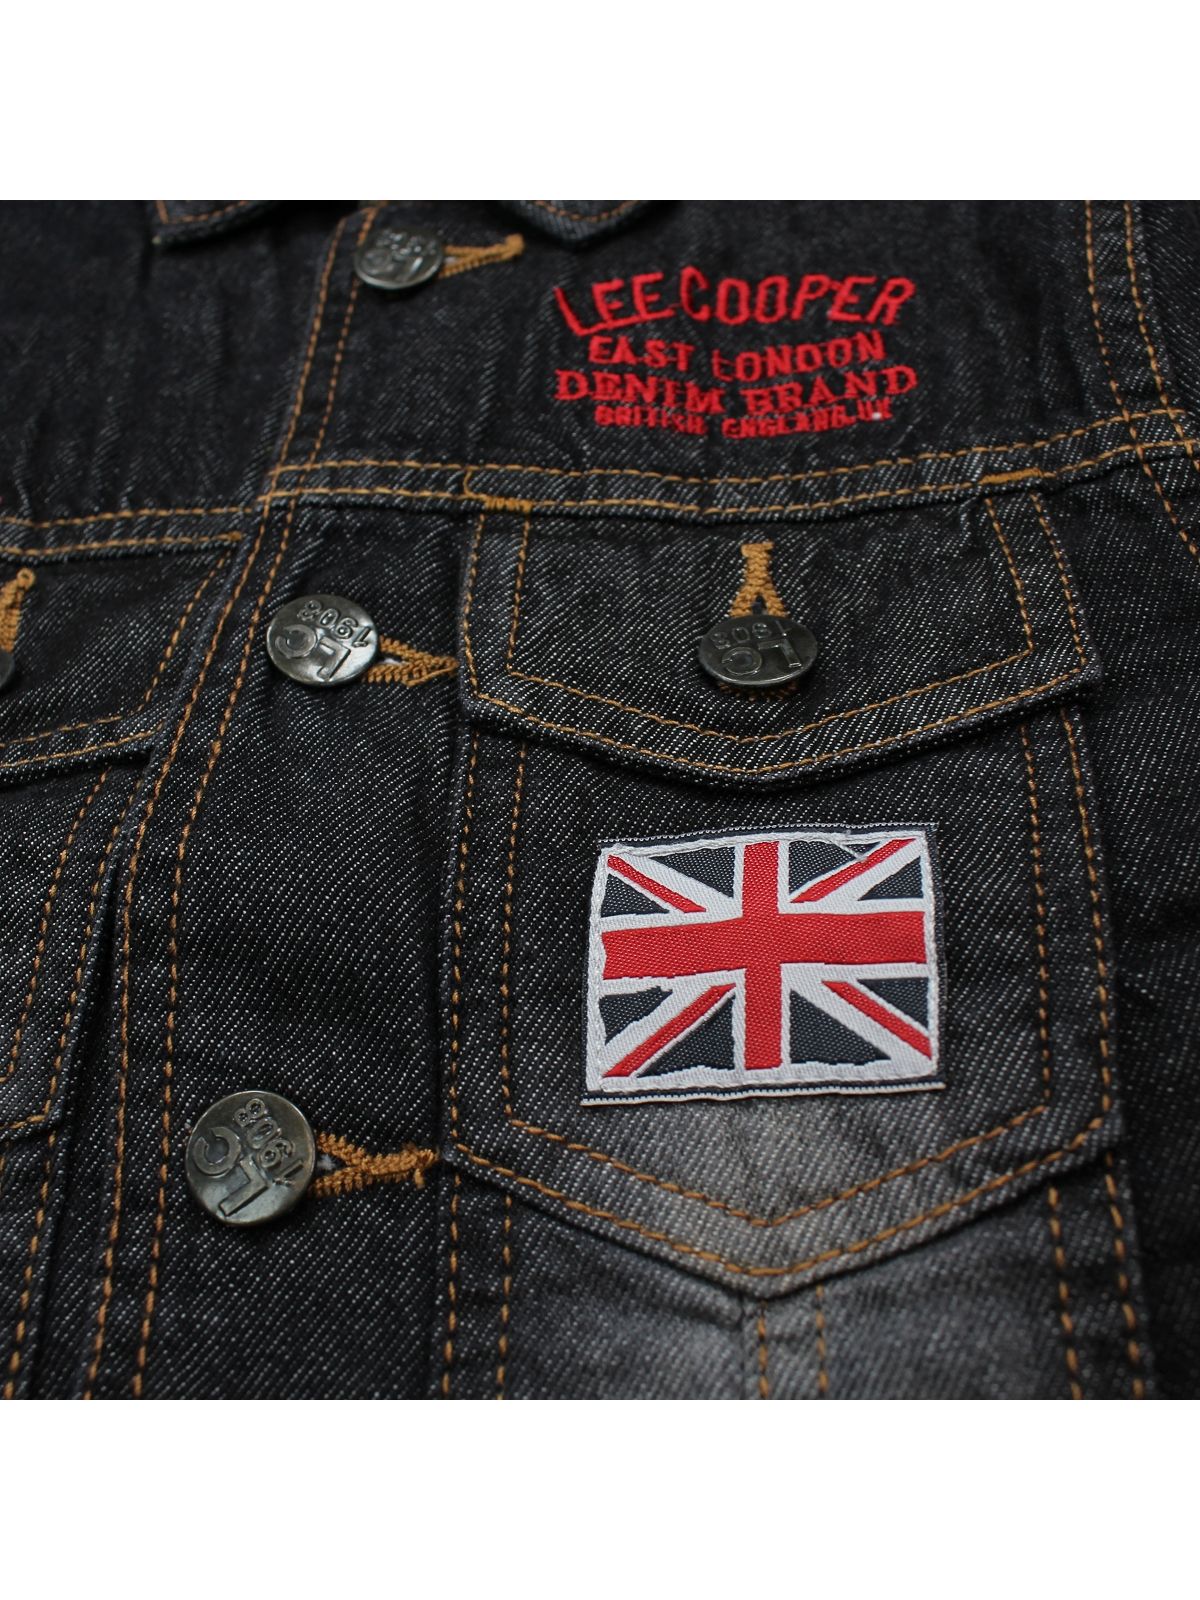 Lee Cooper Jeans veste